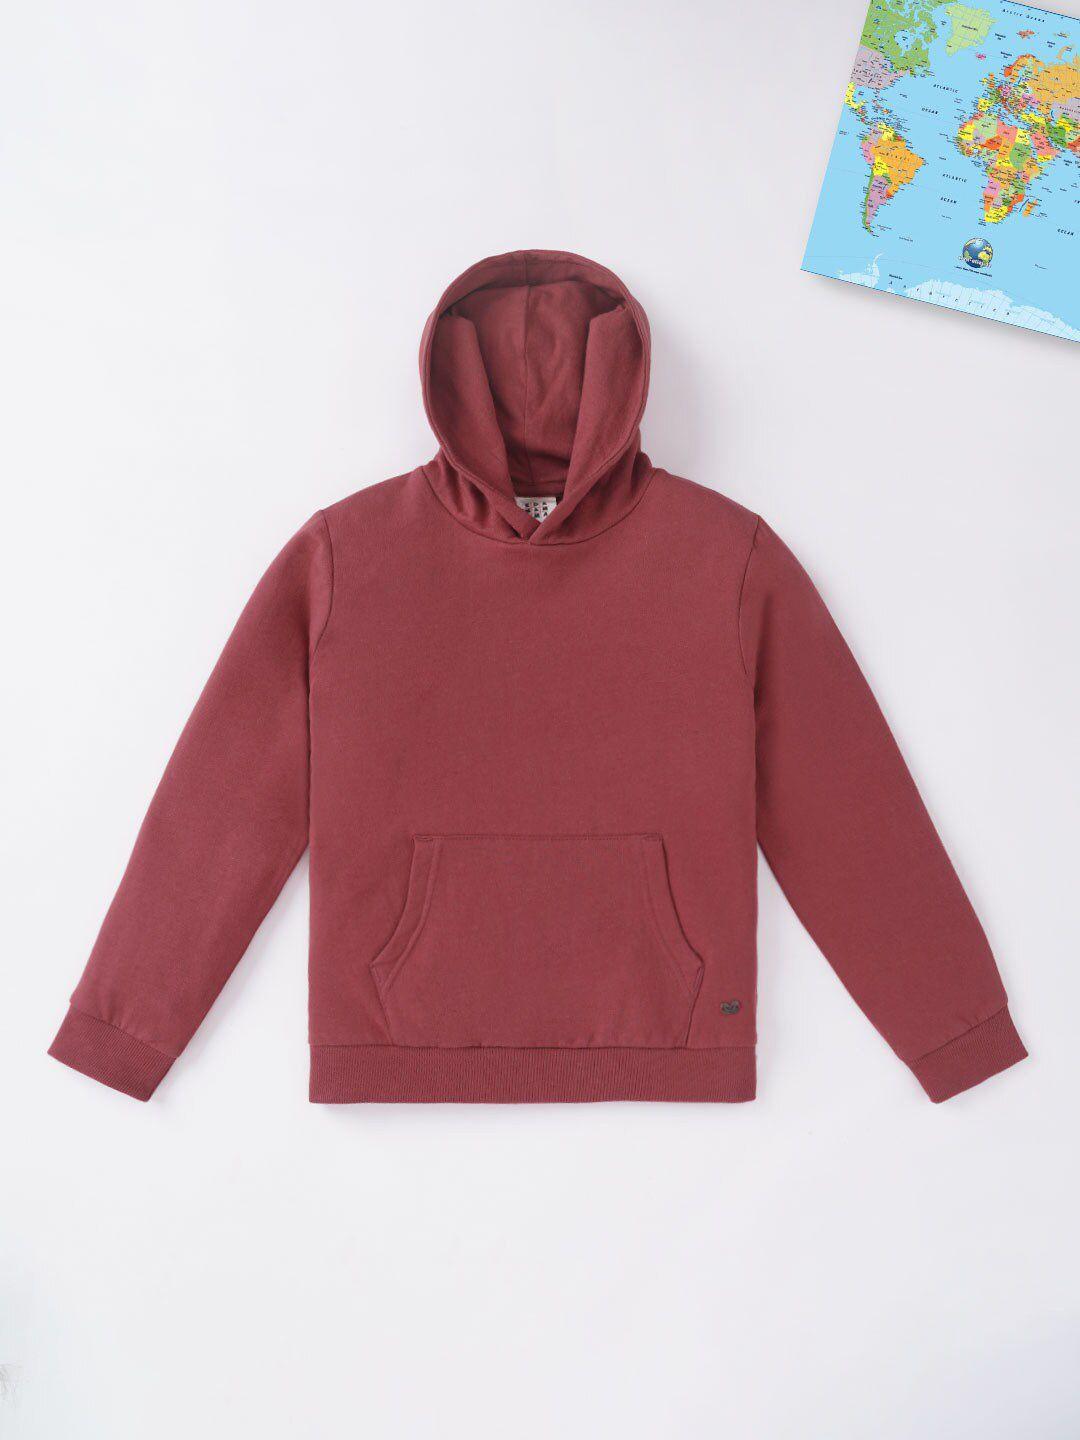 ed-a-mamma boys maroon hooded sweatshirt